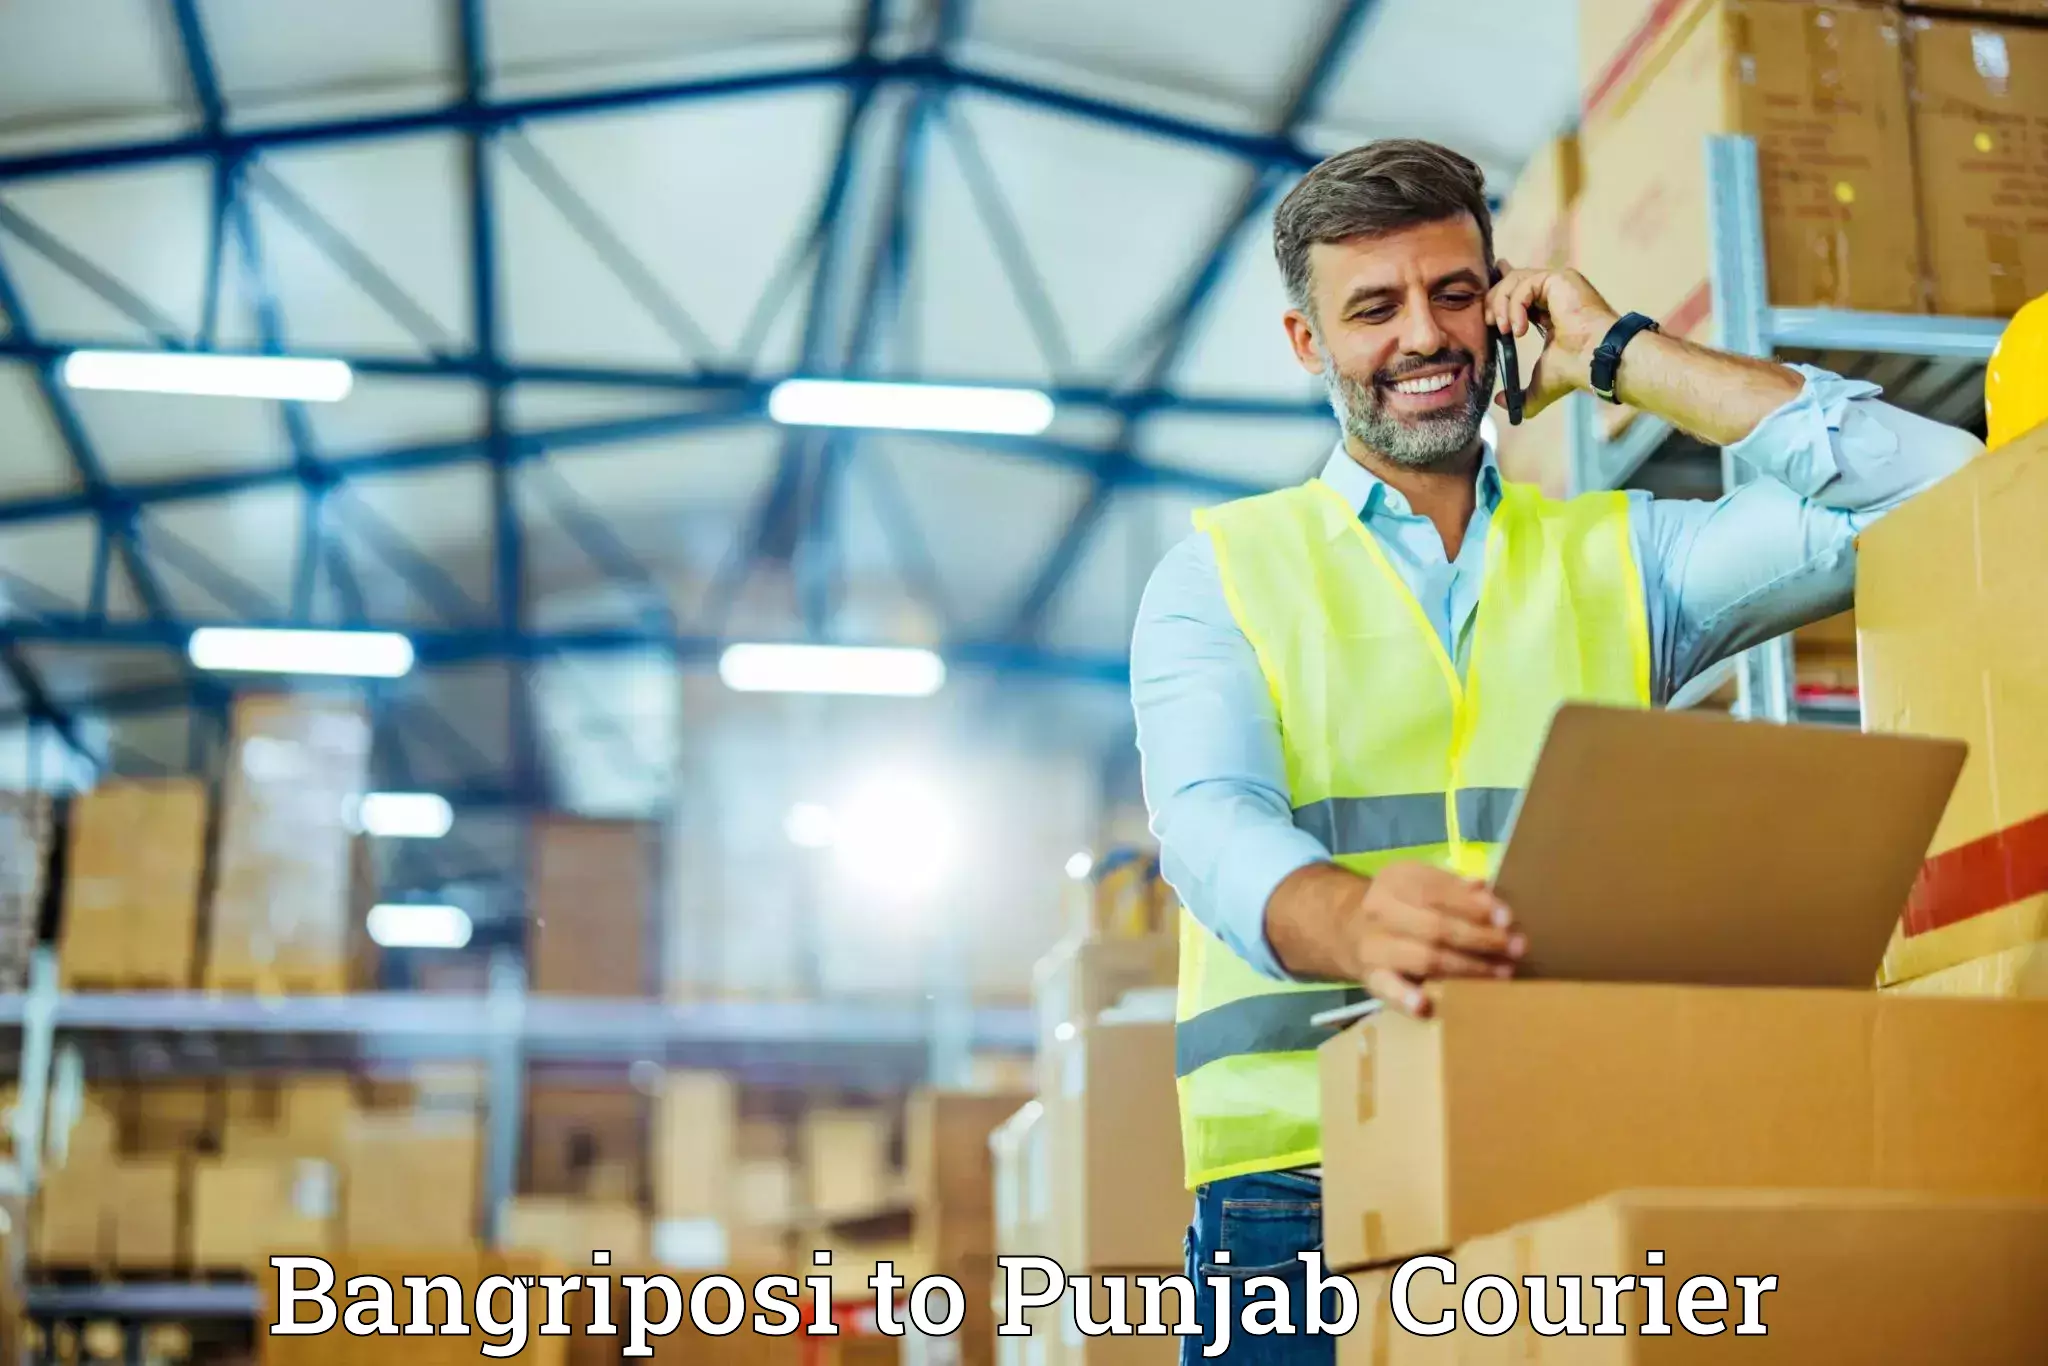 High-quality moving services Bangriposi to Punjab